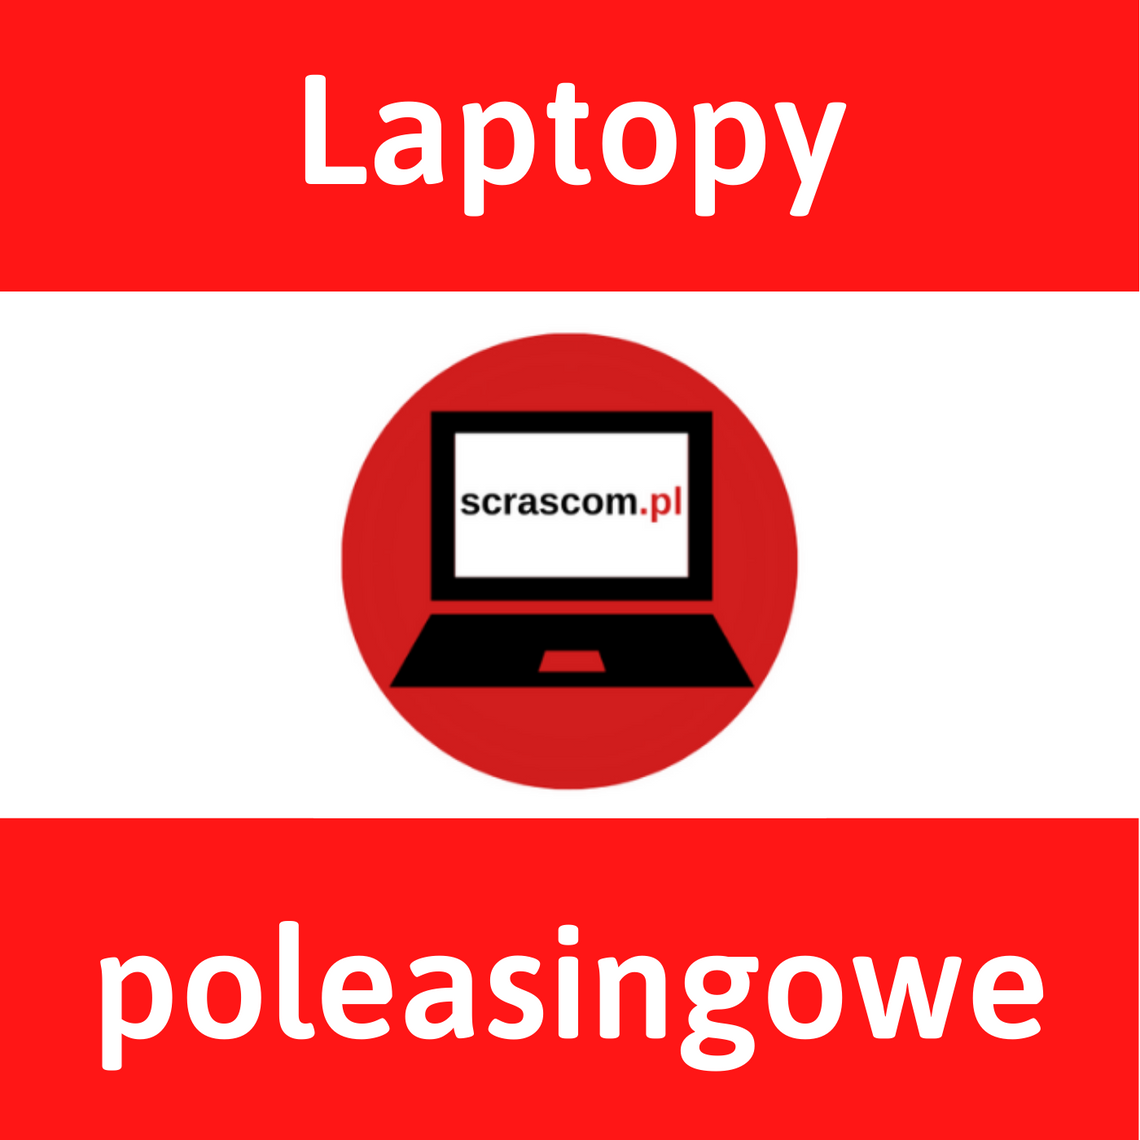 Laptopy poleasingowe Scrascom